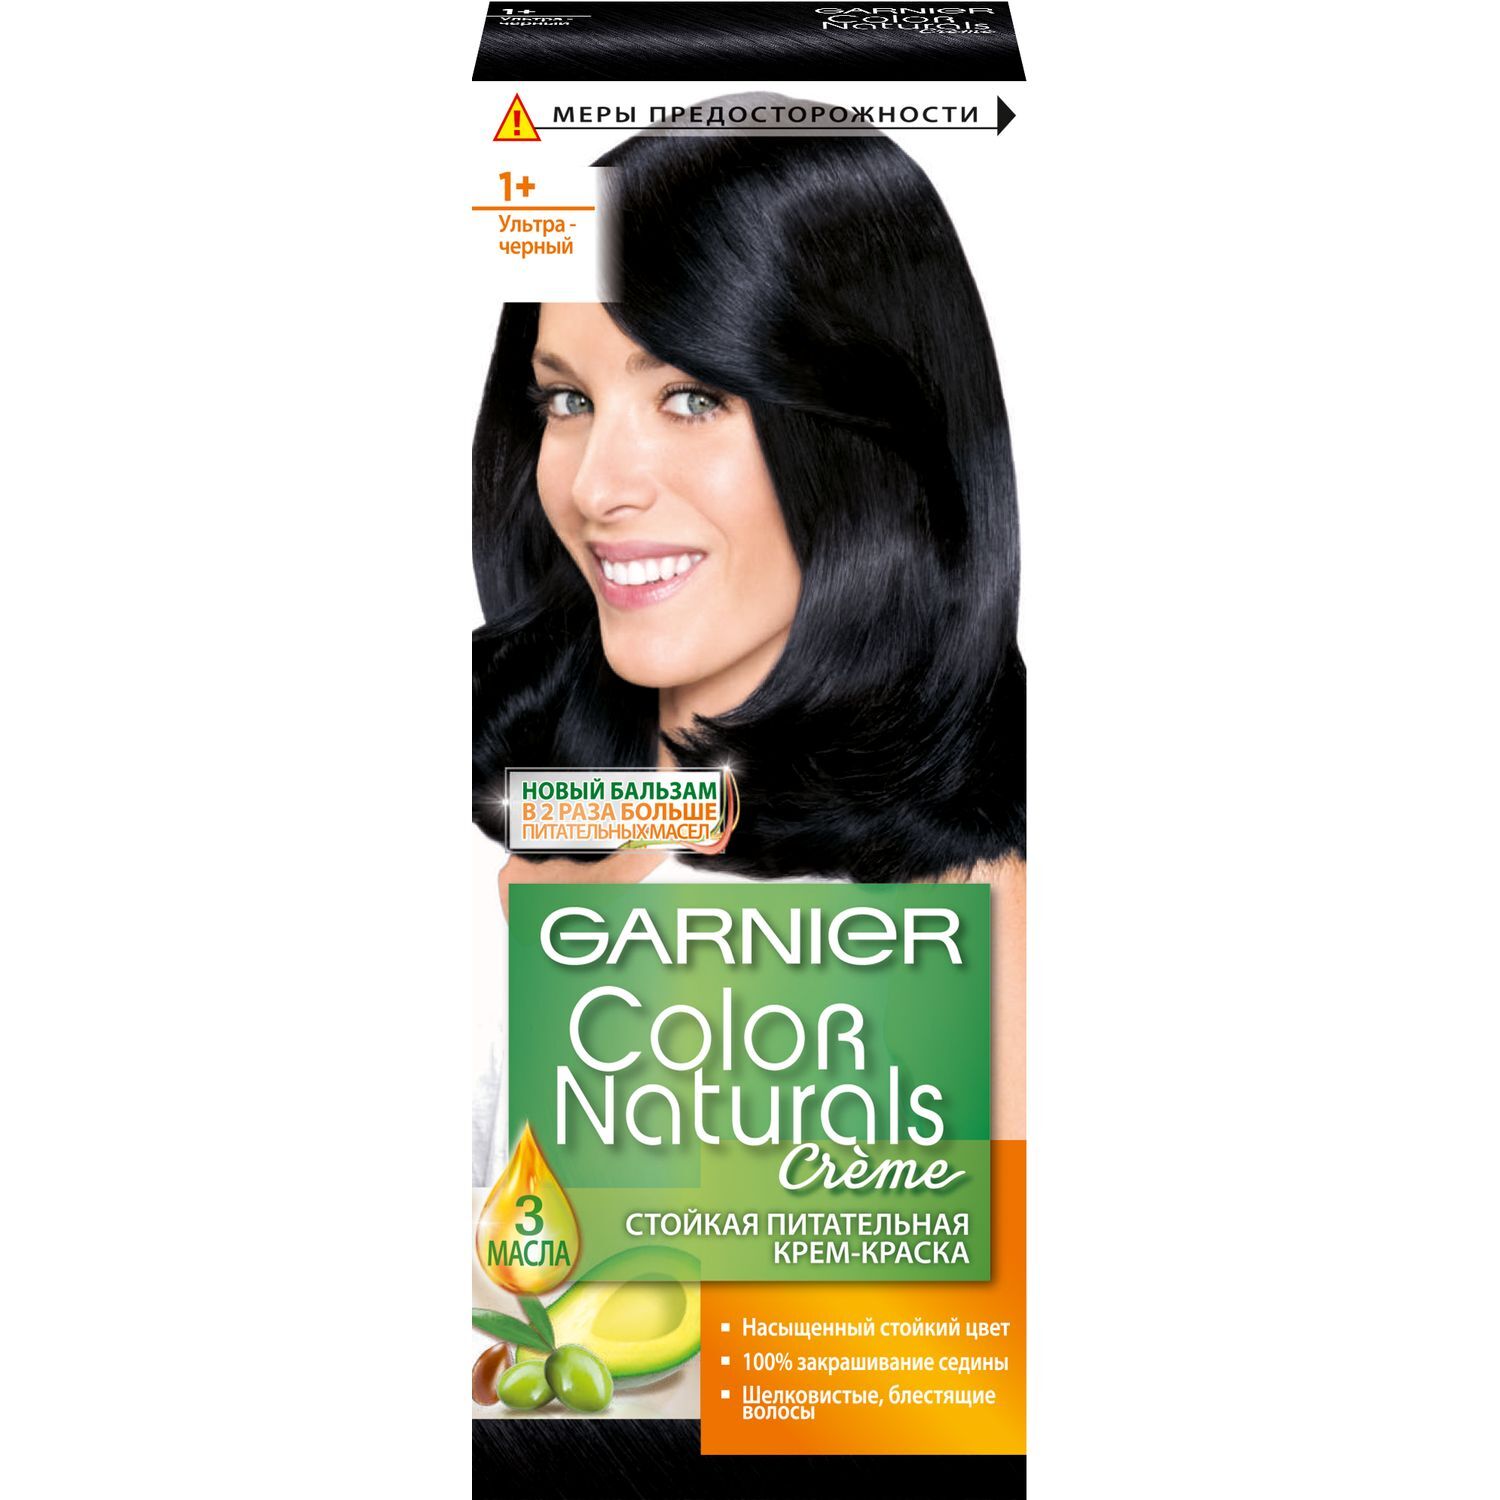 Краска для волос темная гарньер. Garnier +1 ультра черный краска. Крем-краска для волос Garnier Color naturals с 3 маслами, тон 1+, ультра черный. Краска для волос гарньер Color naturals 1.10. Краска гарньер черная 1.0.